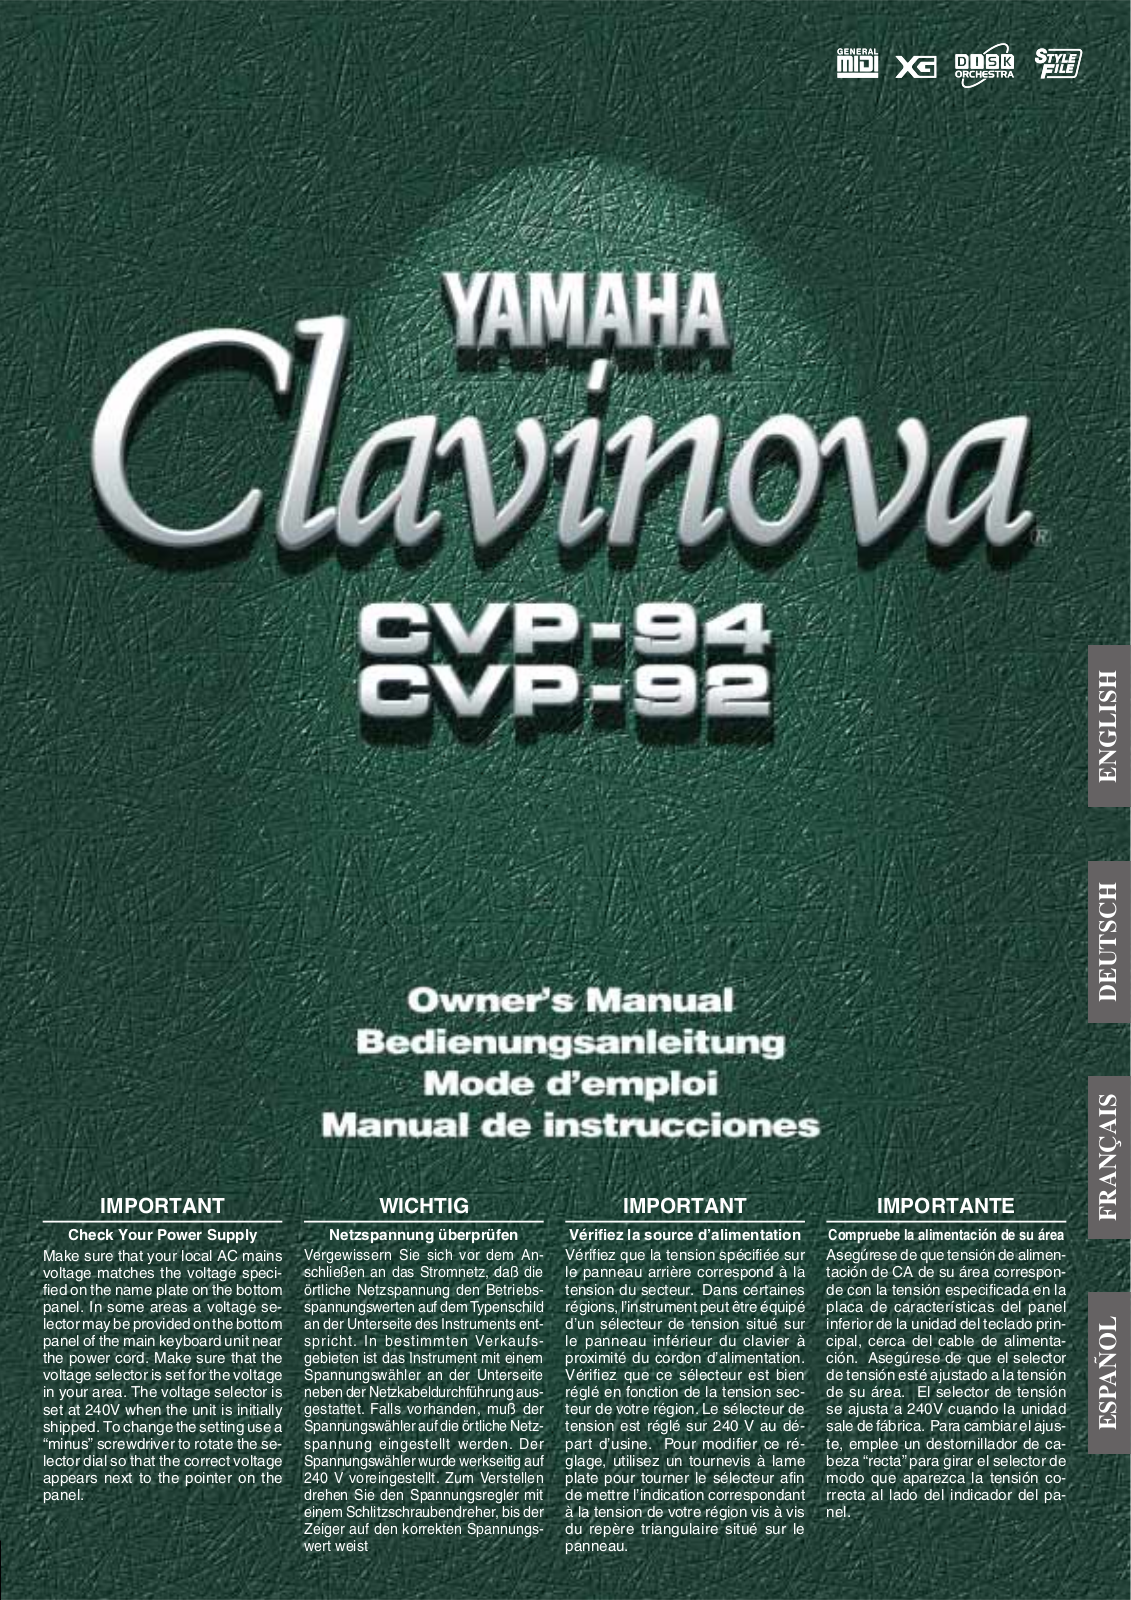 Yamaha CVP-94, CVP-92 User Manual